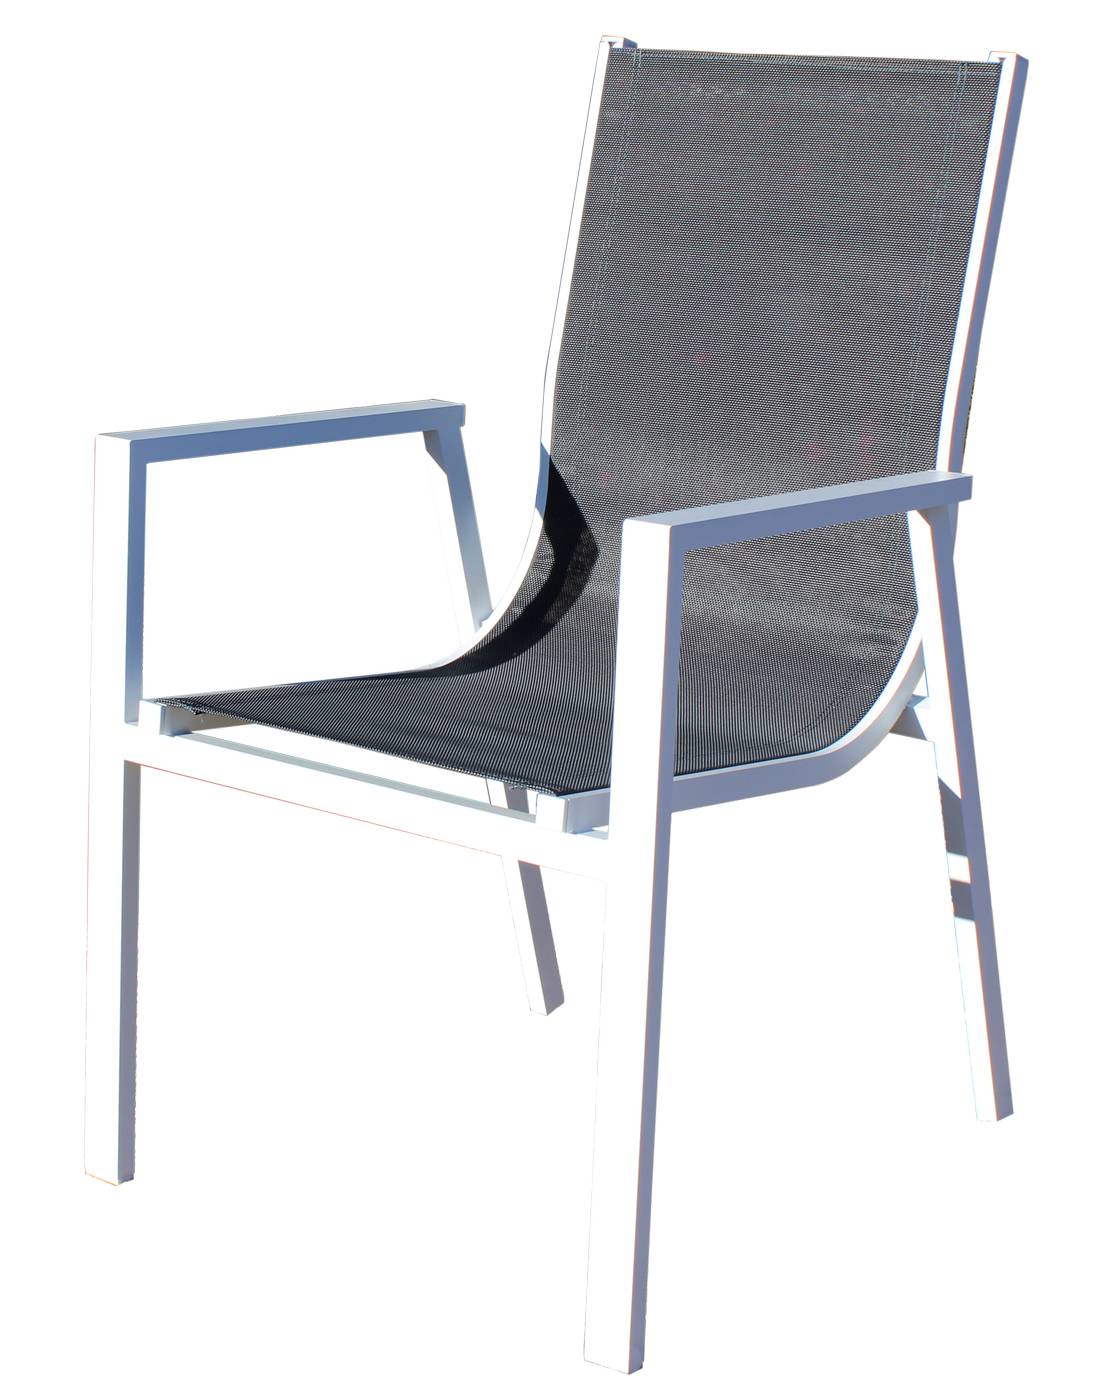 Set Córcega-160-4 Sidney - Conjunto formado por: Mesa rectangular aluminio con tablero HPL de 160 cm + 4 sillones de aluminio y textilen. Colores: blanco y antracita.